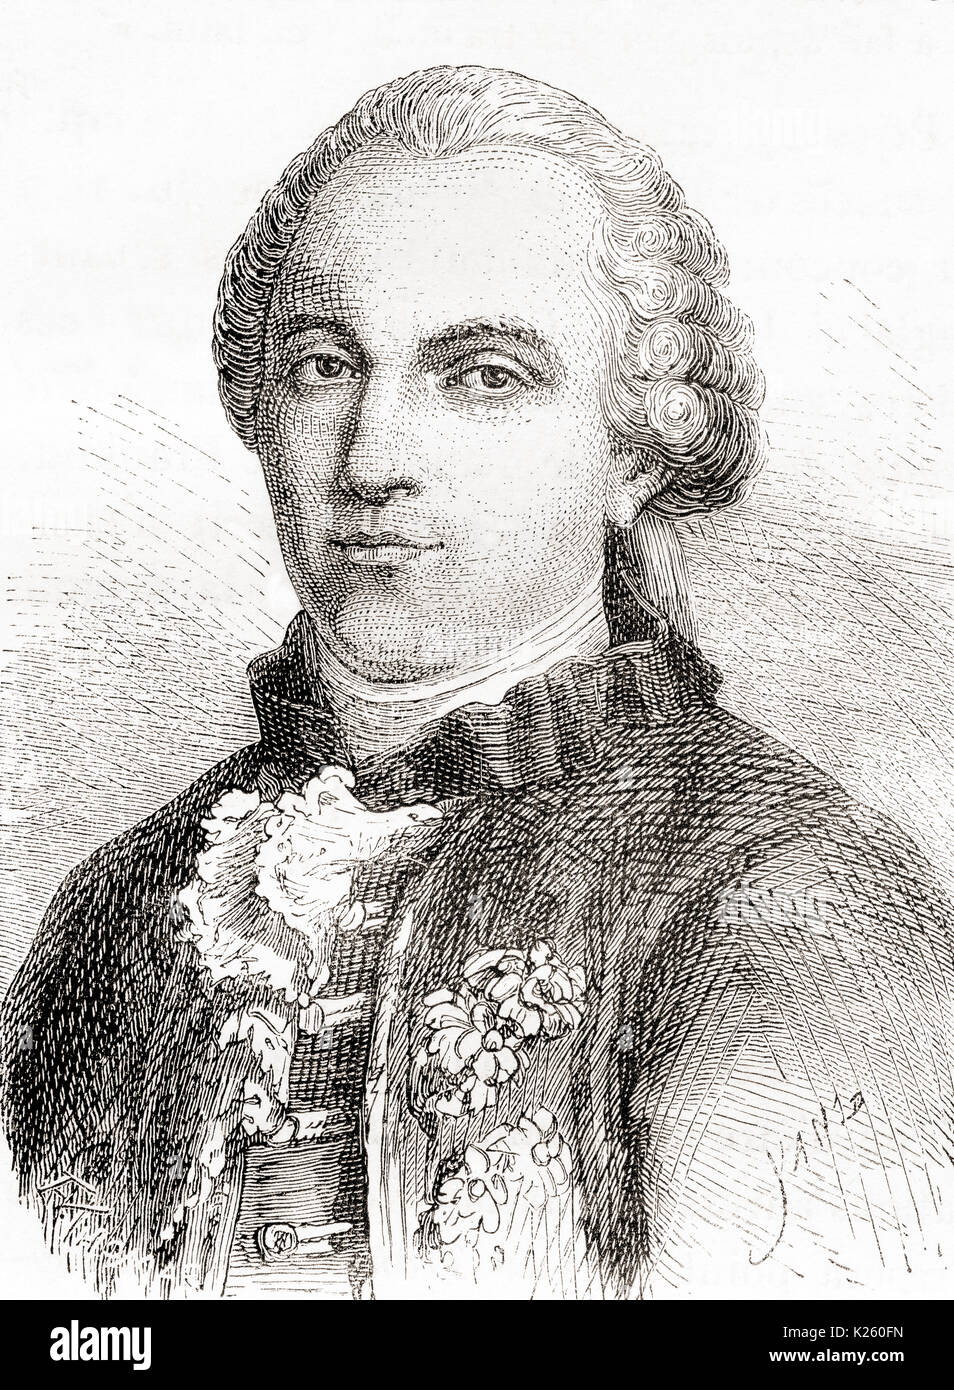 Georges-Louis Leclerc, Comte de Buffon, 1707 – 1788. French naturalist, mathematician, cosmologist, and encyclopédiste.  From Les Merveilles de la Science, published 1870. Stock Photo